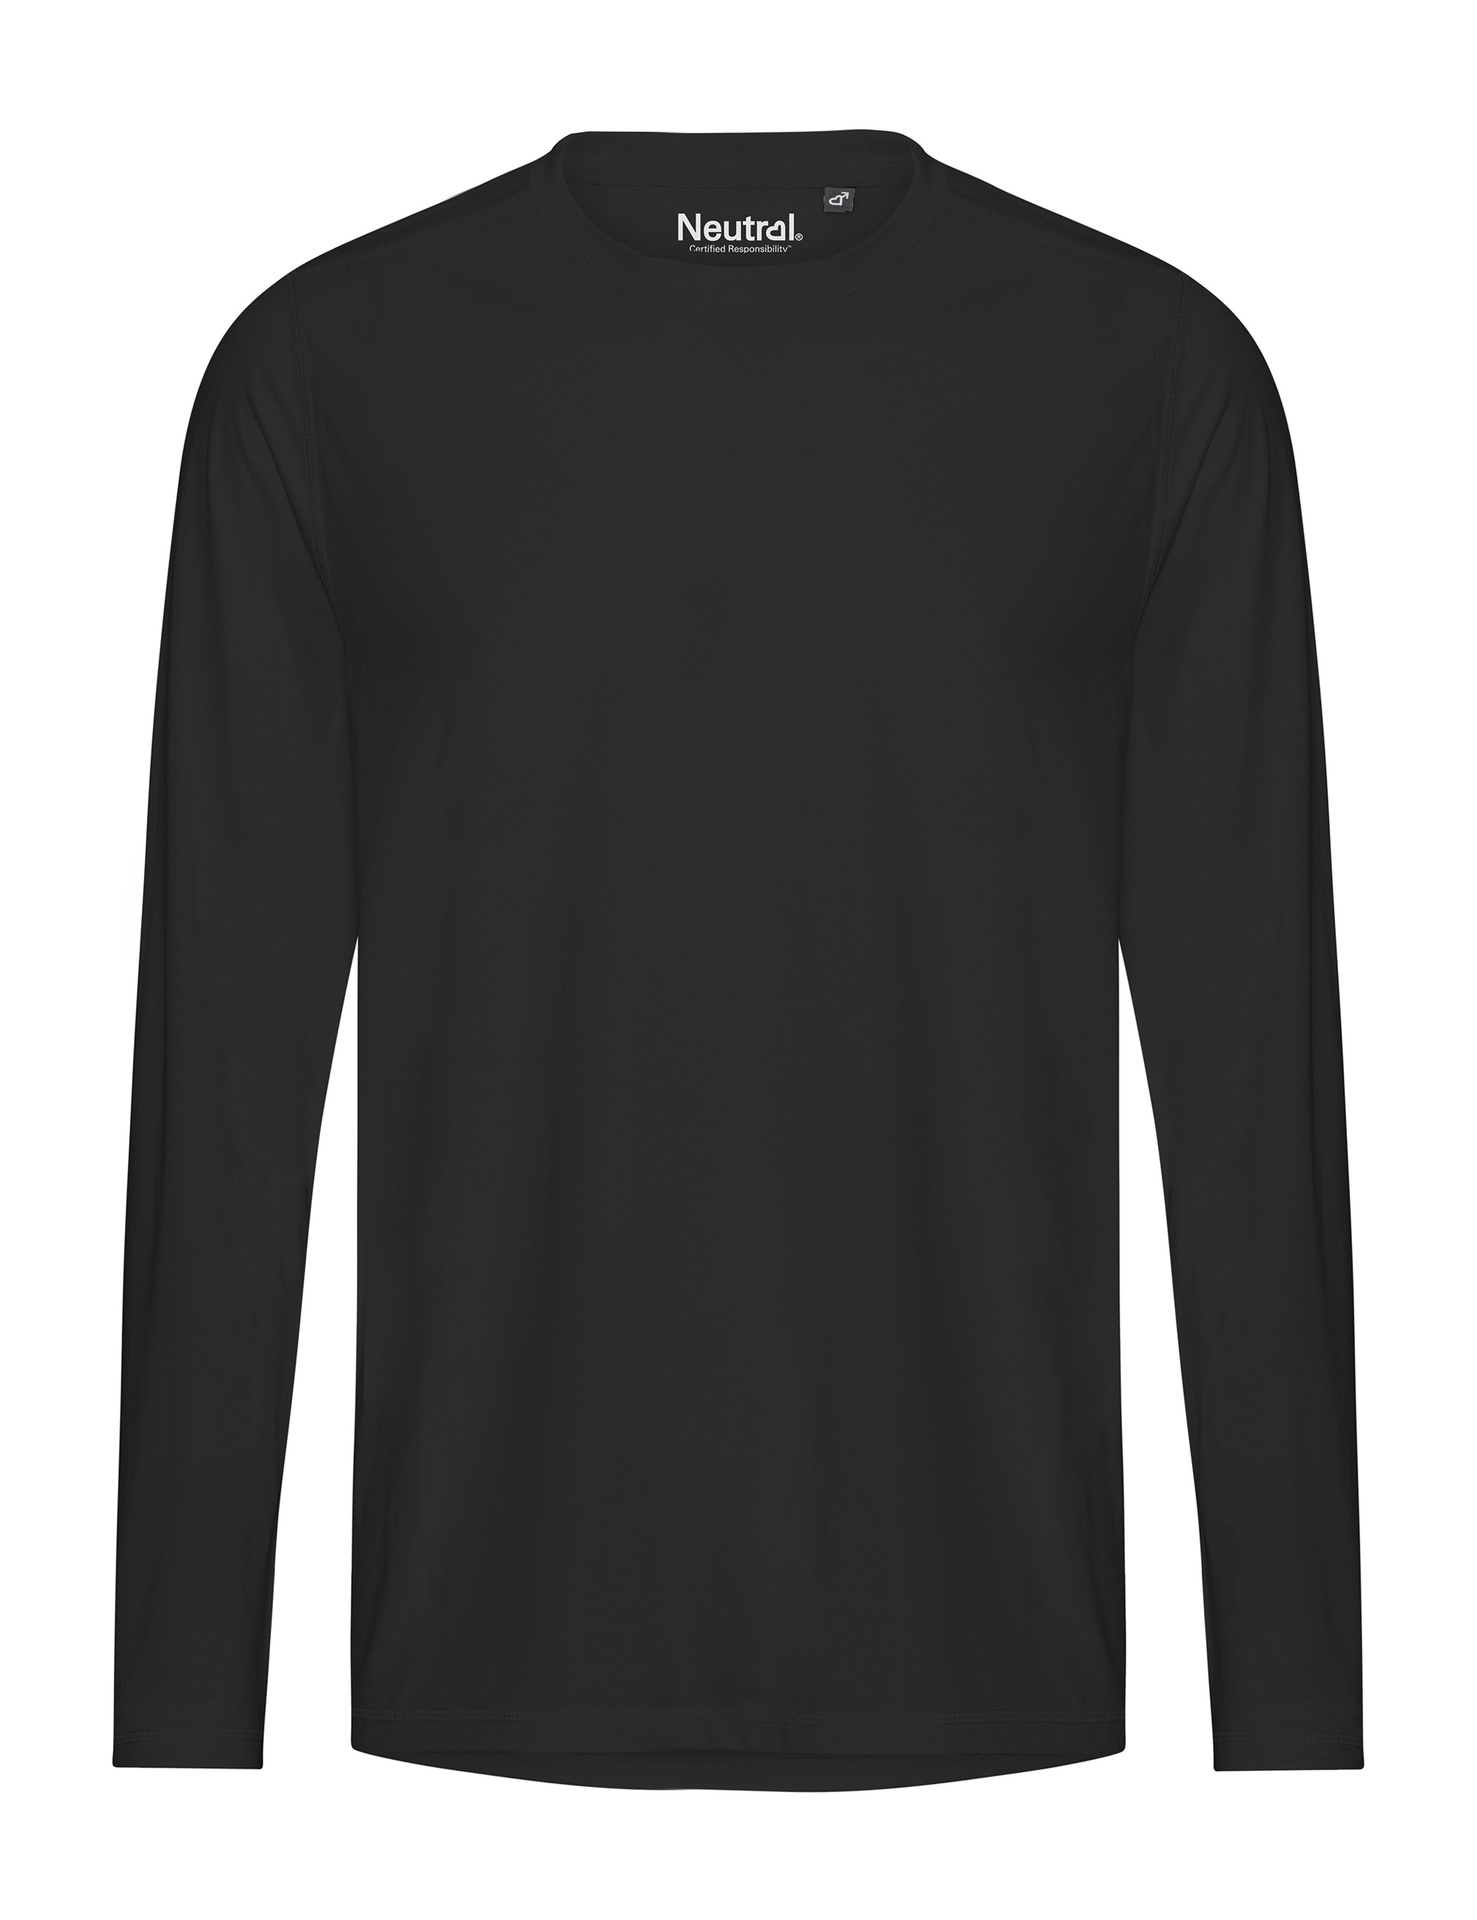 [PR/03828] Recycled Performance LS T-Shirt (Black 03, L)